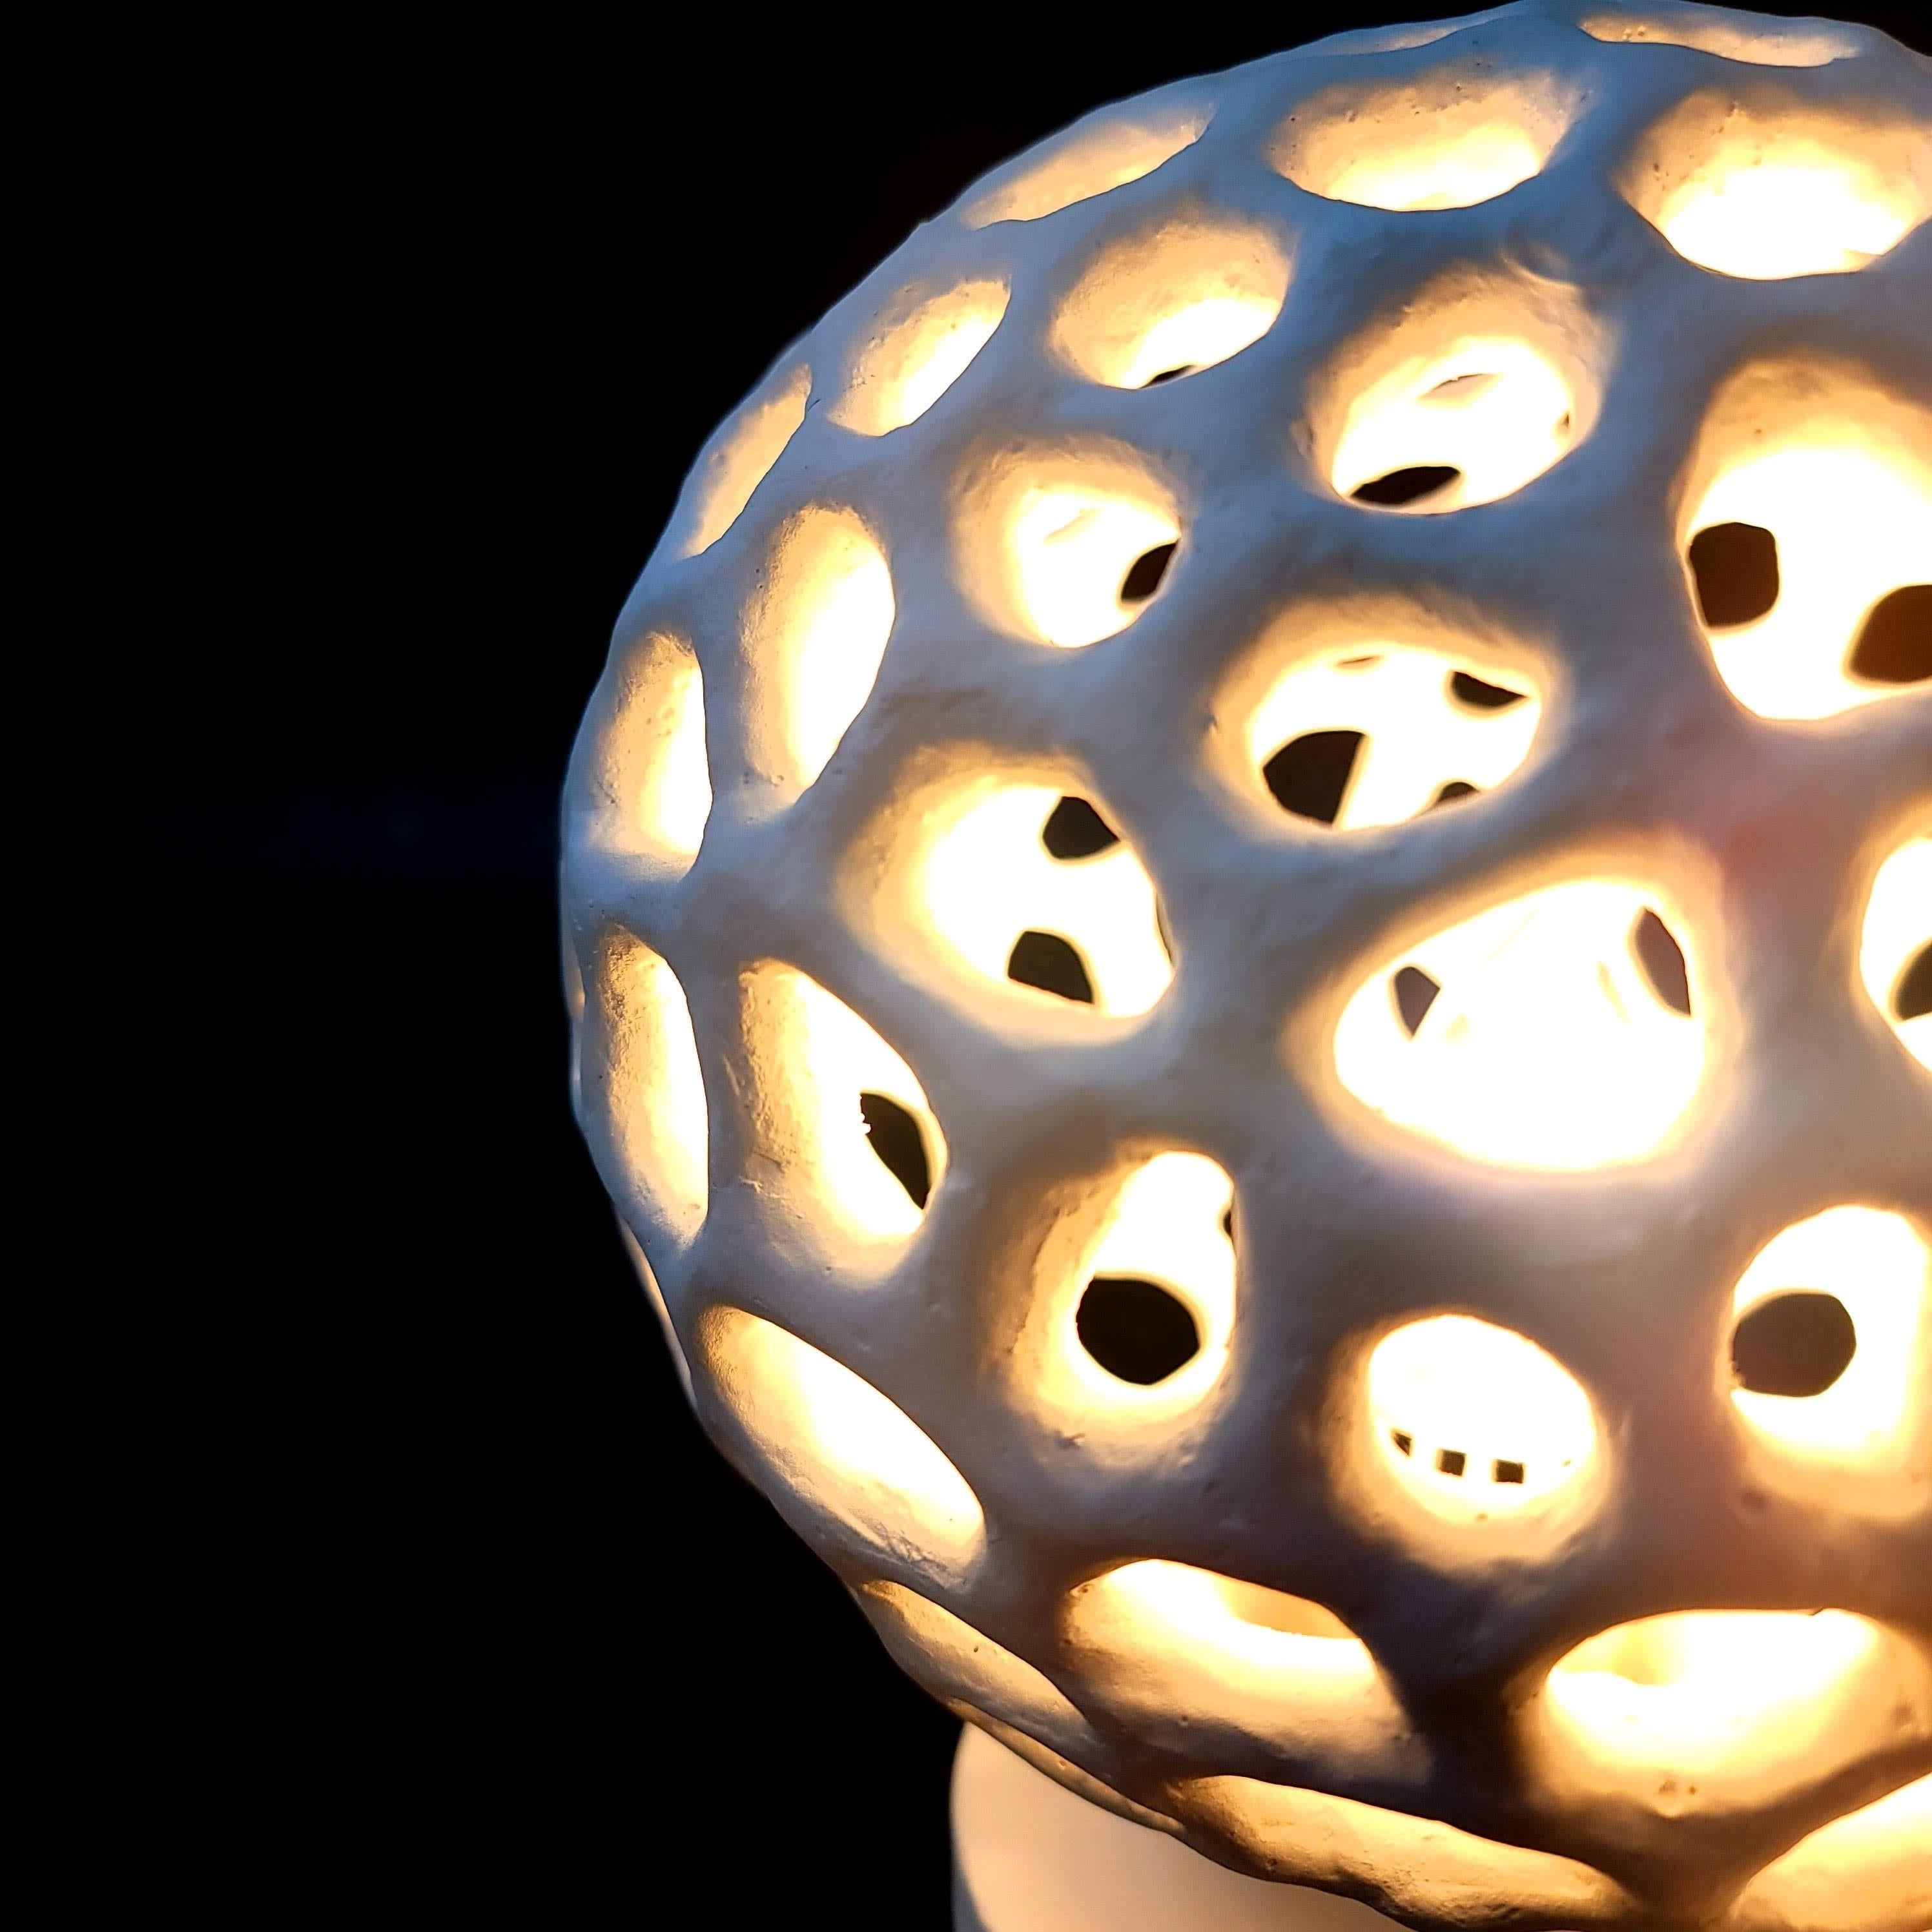 Notre lampe de table d'ambiance Artisanal Voronoi Sphere est une célébration de la beauté complexe de la nature et du charme de la géométrie. Inspirée par les motifs complexes, cette lampe est une œuvre d'art qui fait entrer les merveilles de la